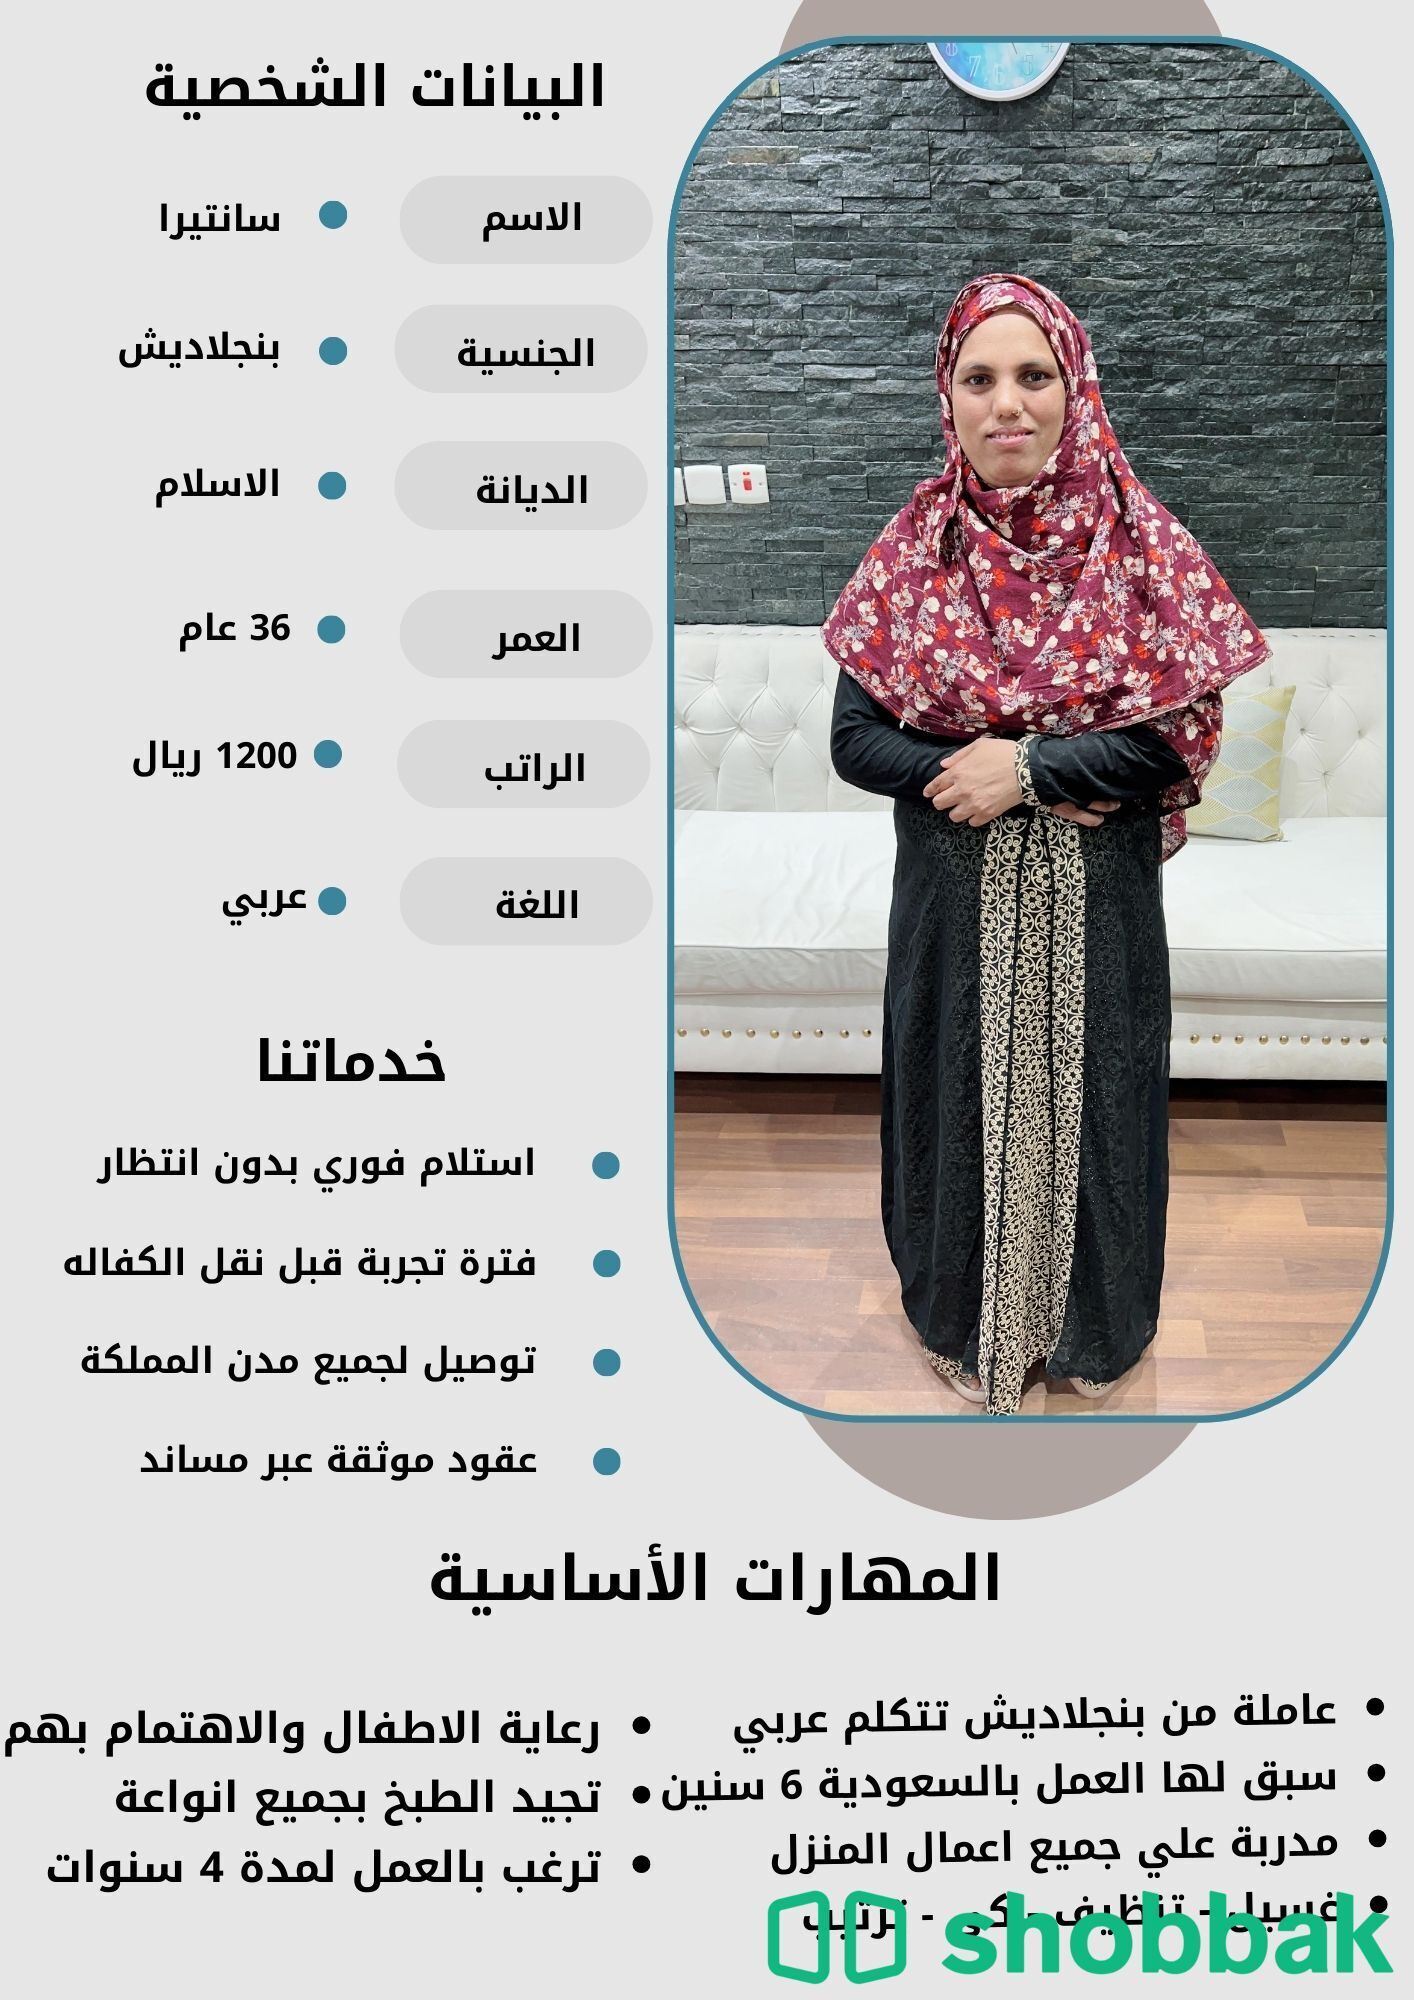 عاملات للتنازل من مختلف الجنسيات باحسن المواصفات والاسعار 0507600628 Shobbak Saudi Arabia